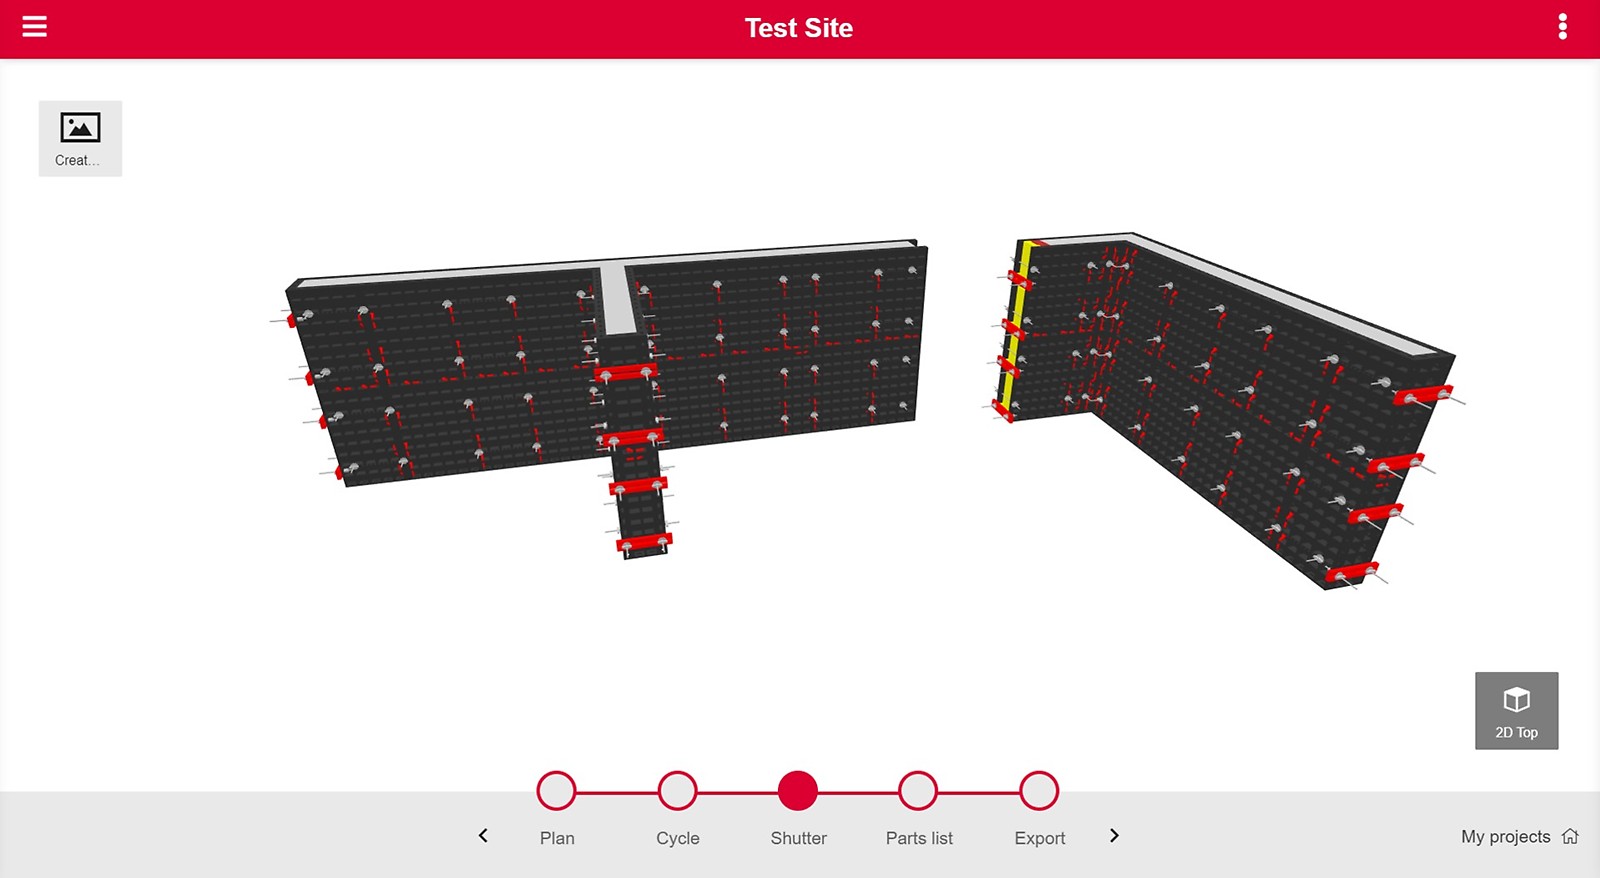 PERI QuickSolve - DUO Planificateur - Étape 3 'shutter' : Vous obtenez une visulatisation 3D de votre projet.
